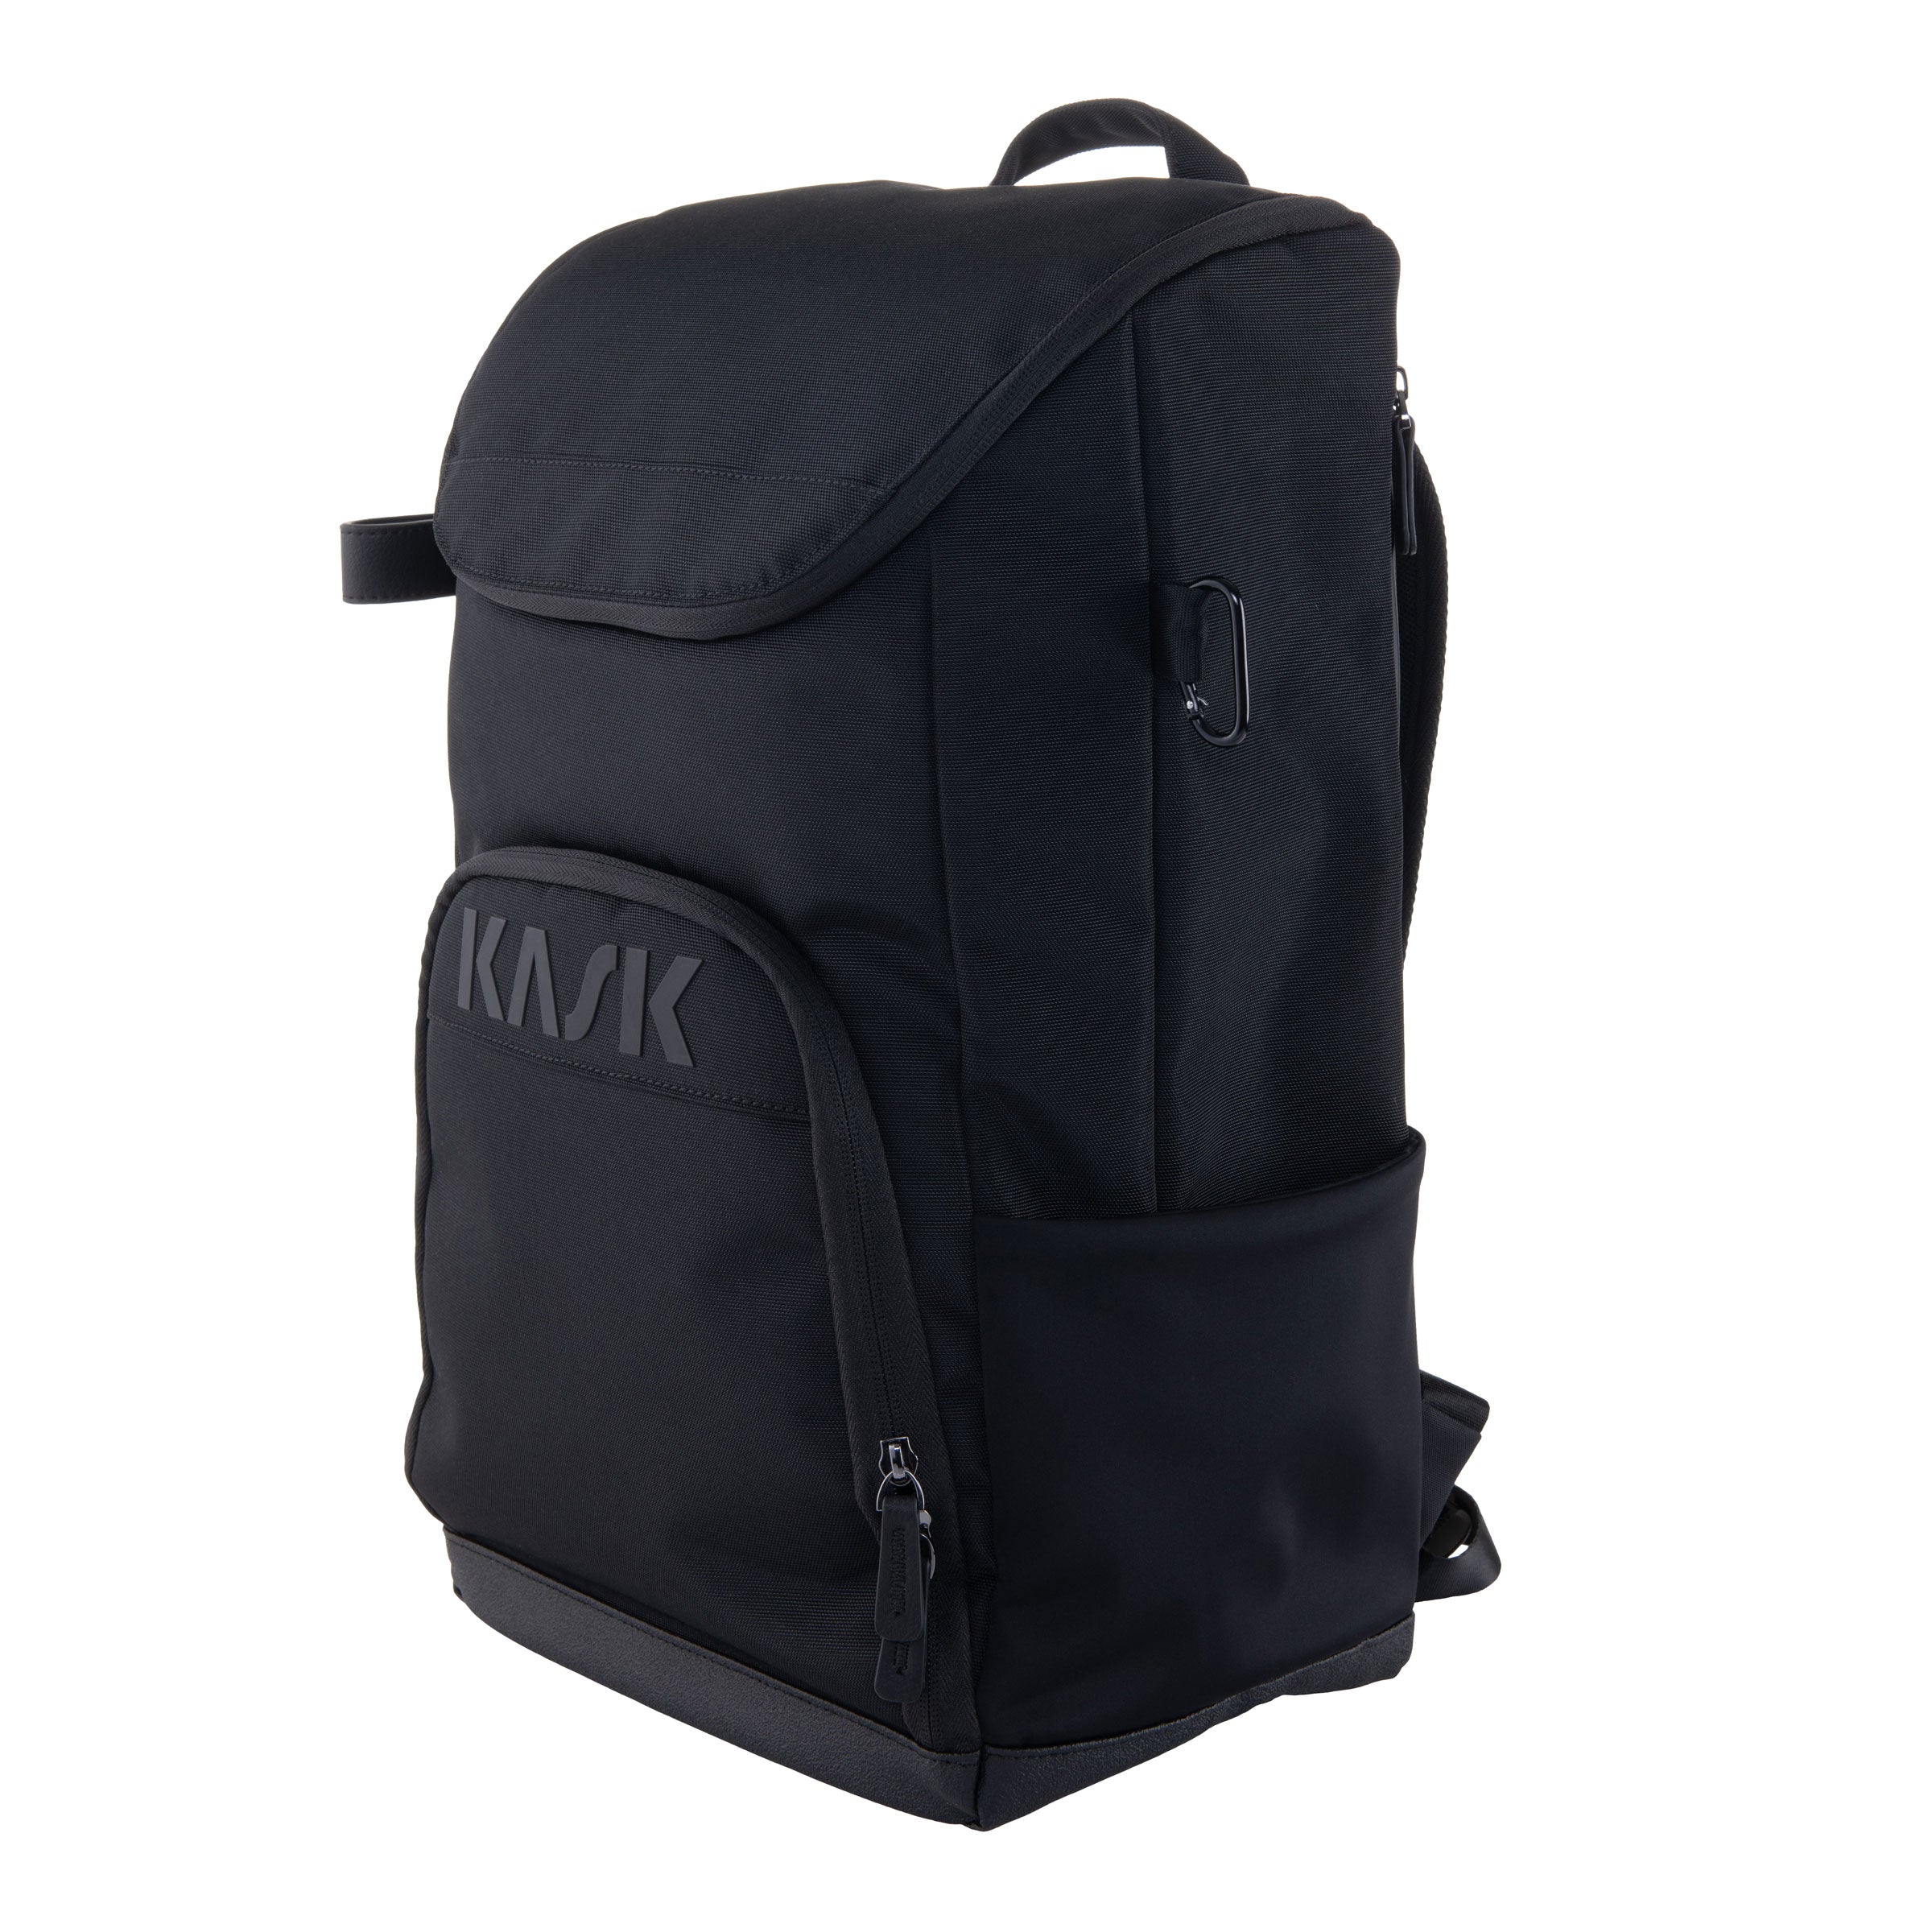 KASK Vertigo Backpack - delivery 3 weeks